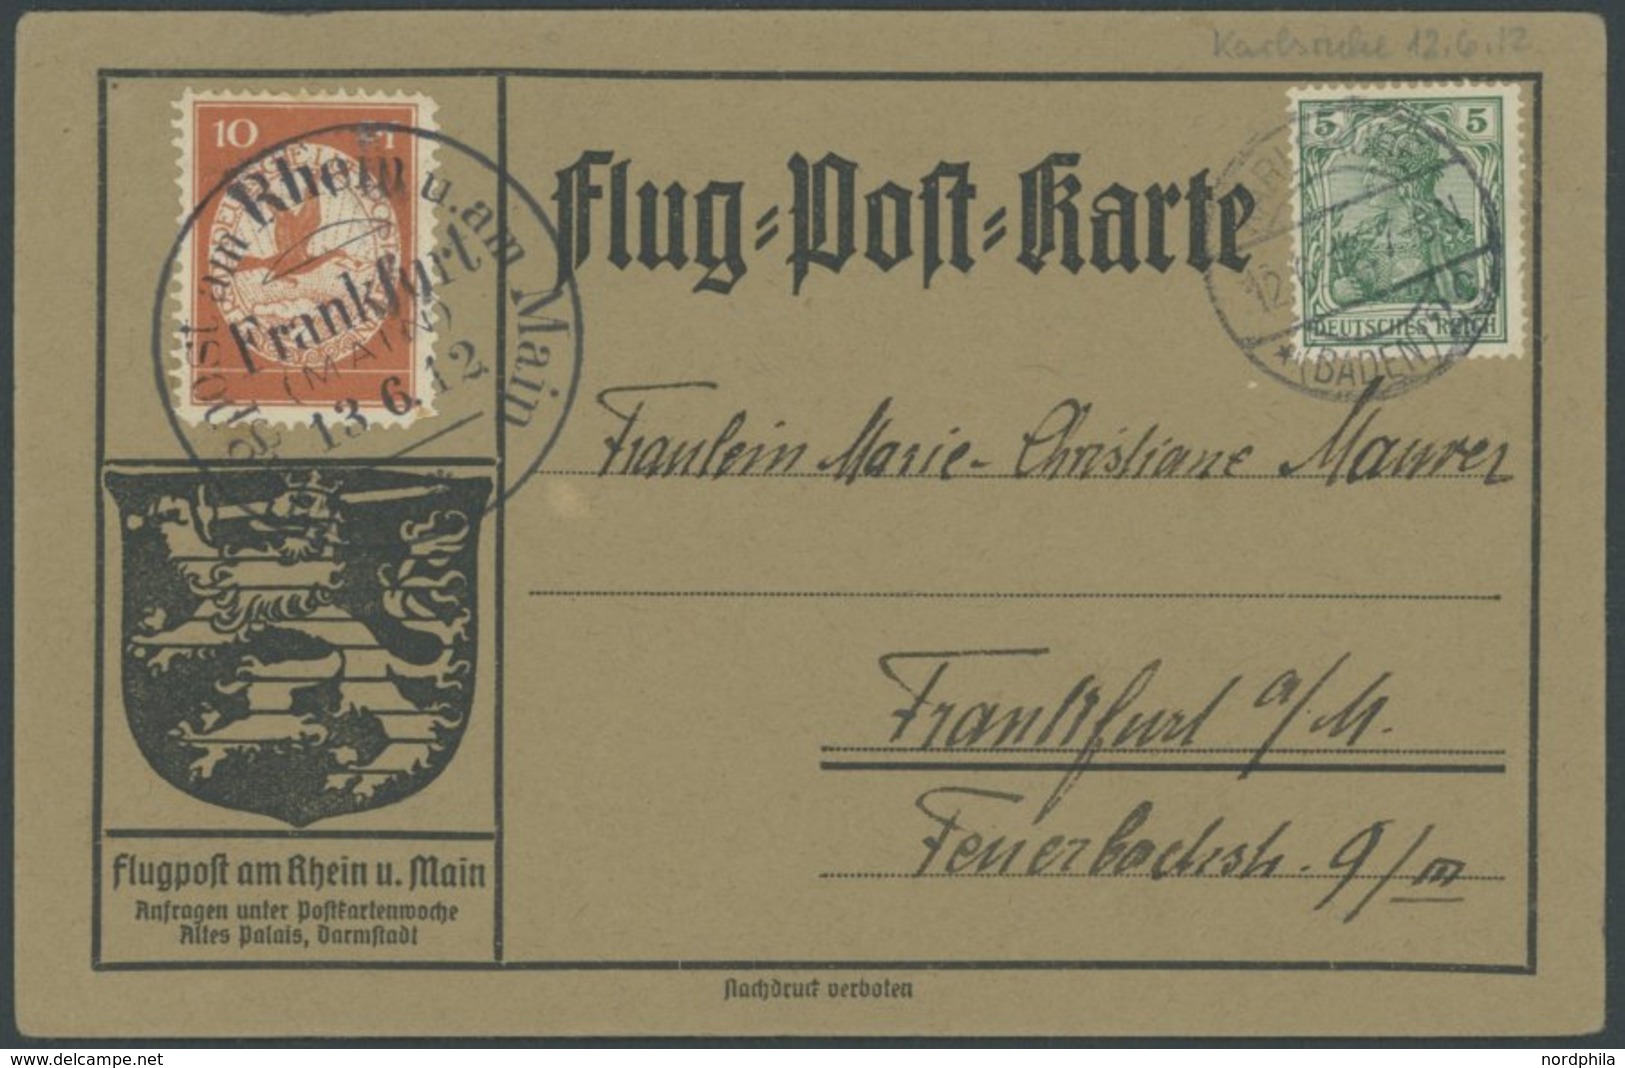 ZEPPELINPOST 10 BRIEF, 1912, 10 Pf. Flp. Am Rhein Und Main Auf Flugpostkarte Mit 5 Pf. Zusatzfrankatur, Sonderstempel Fr - Correo Aéreo & Zeppelin